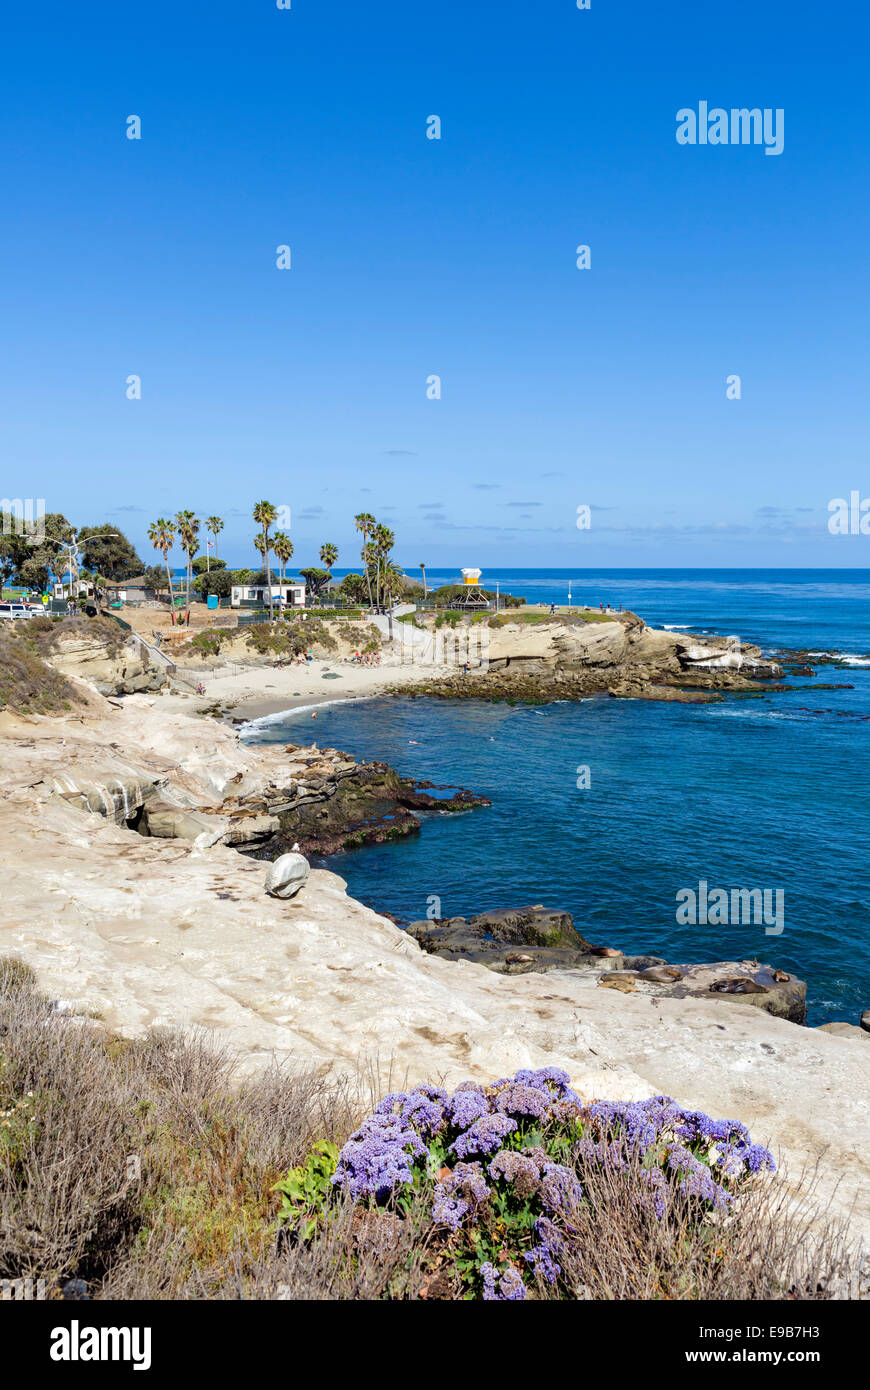 The beach at La Jolla Cove, La Jolla, San Diego County, California, USA Stock Photo